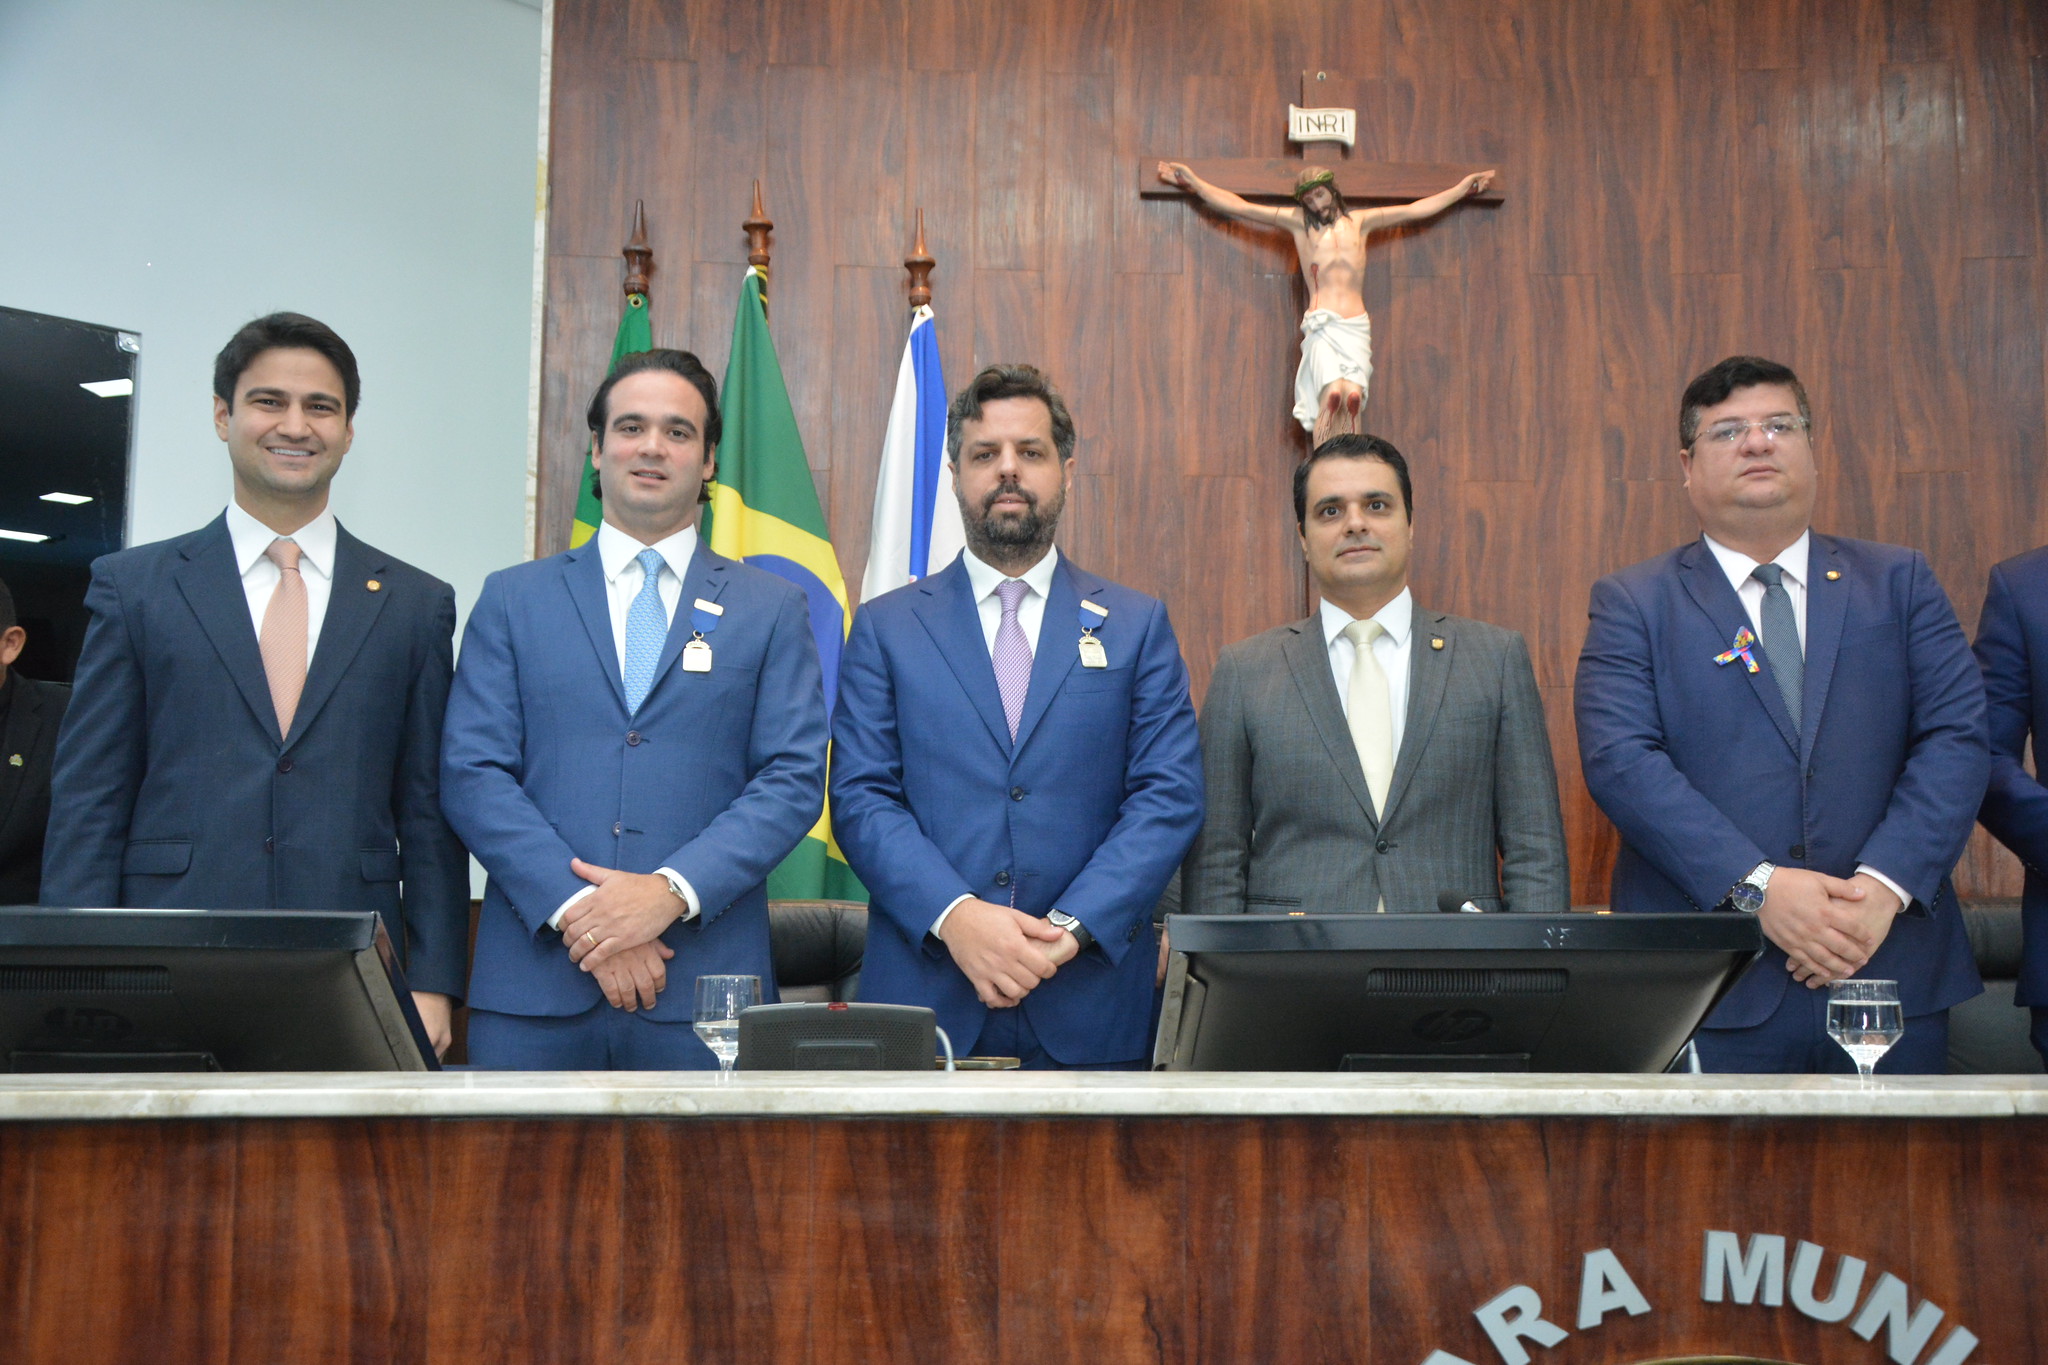 Advogados Cássio Felipe e Lucas Asfor são homenageados com Medalhas do Mérito Jurídico na Câmara Municipal de Fortaleza